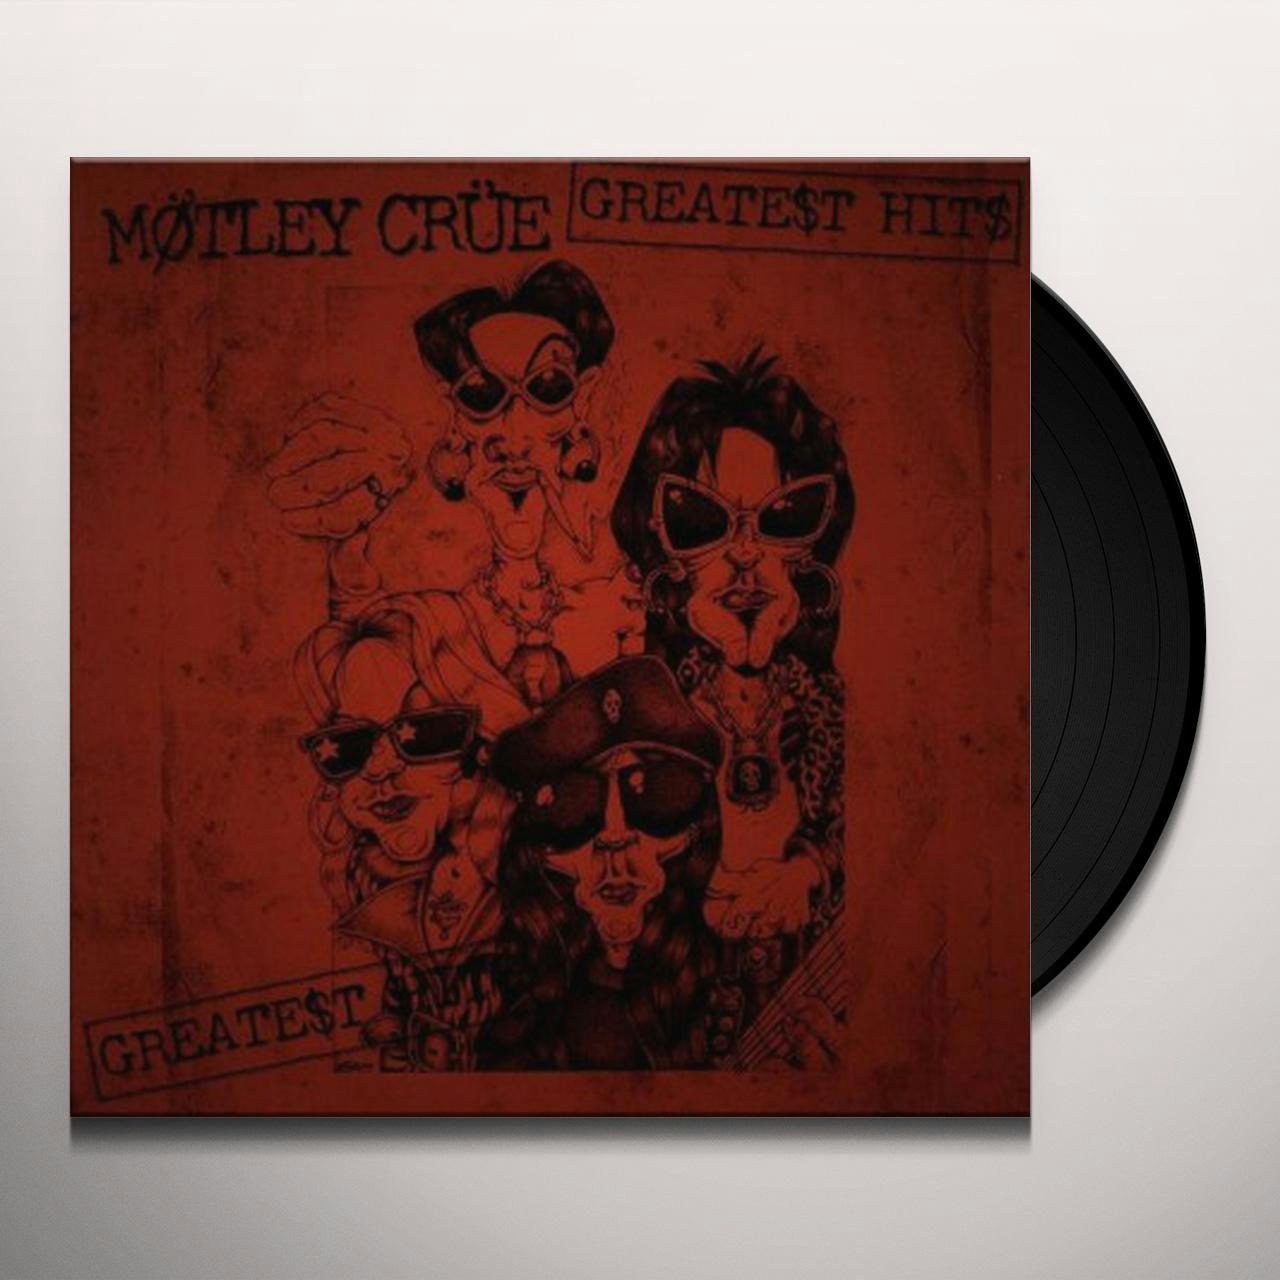 Greatest Hits Vinyl Record - Mötley Crüe